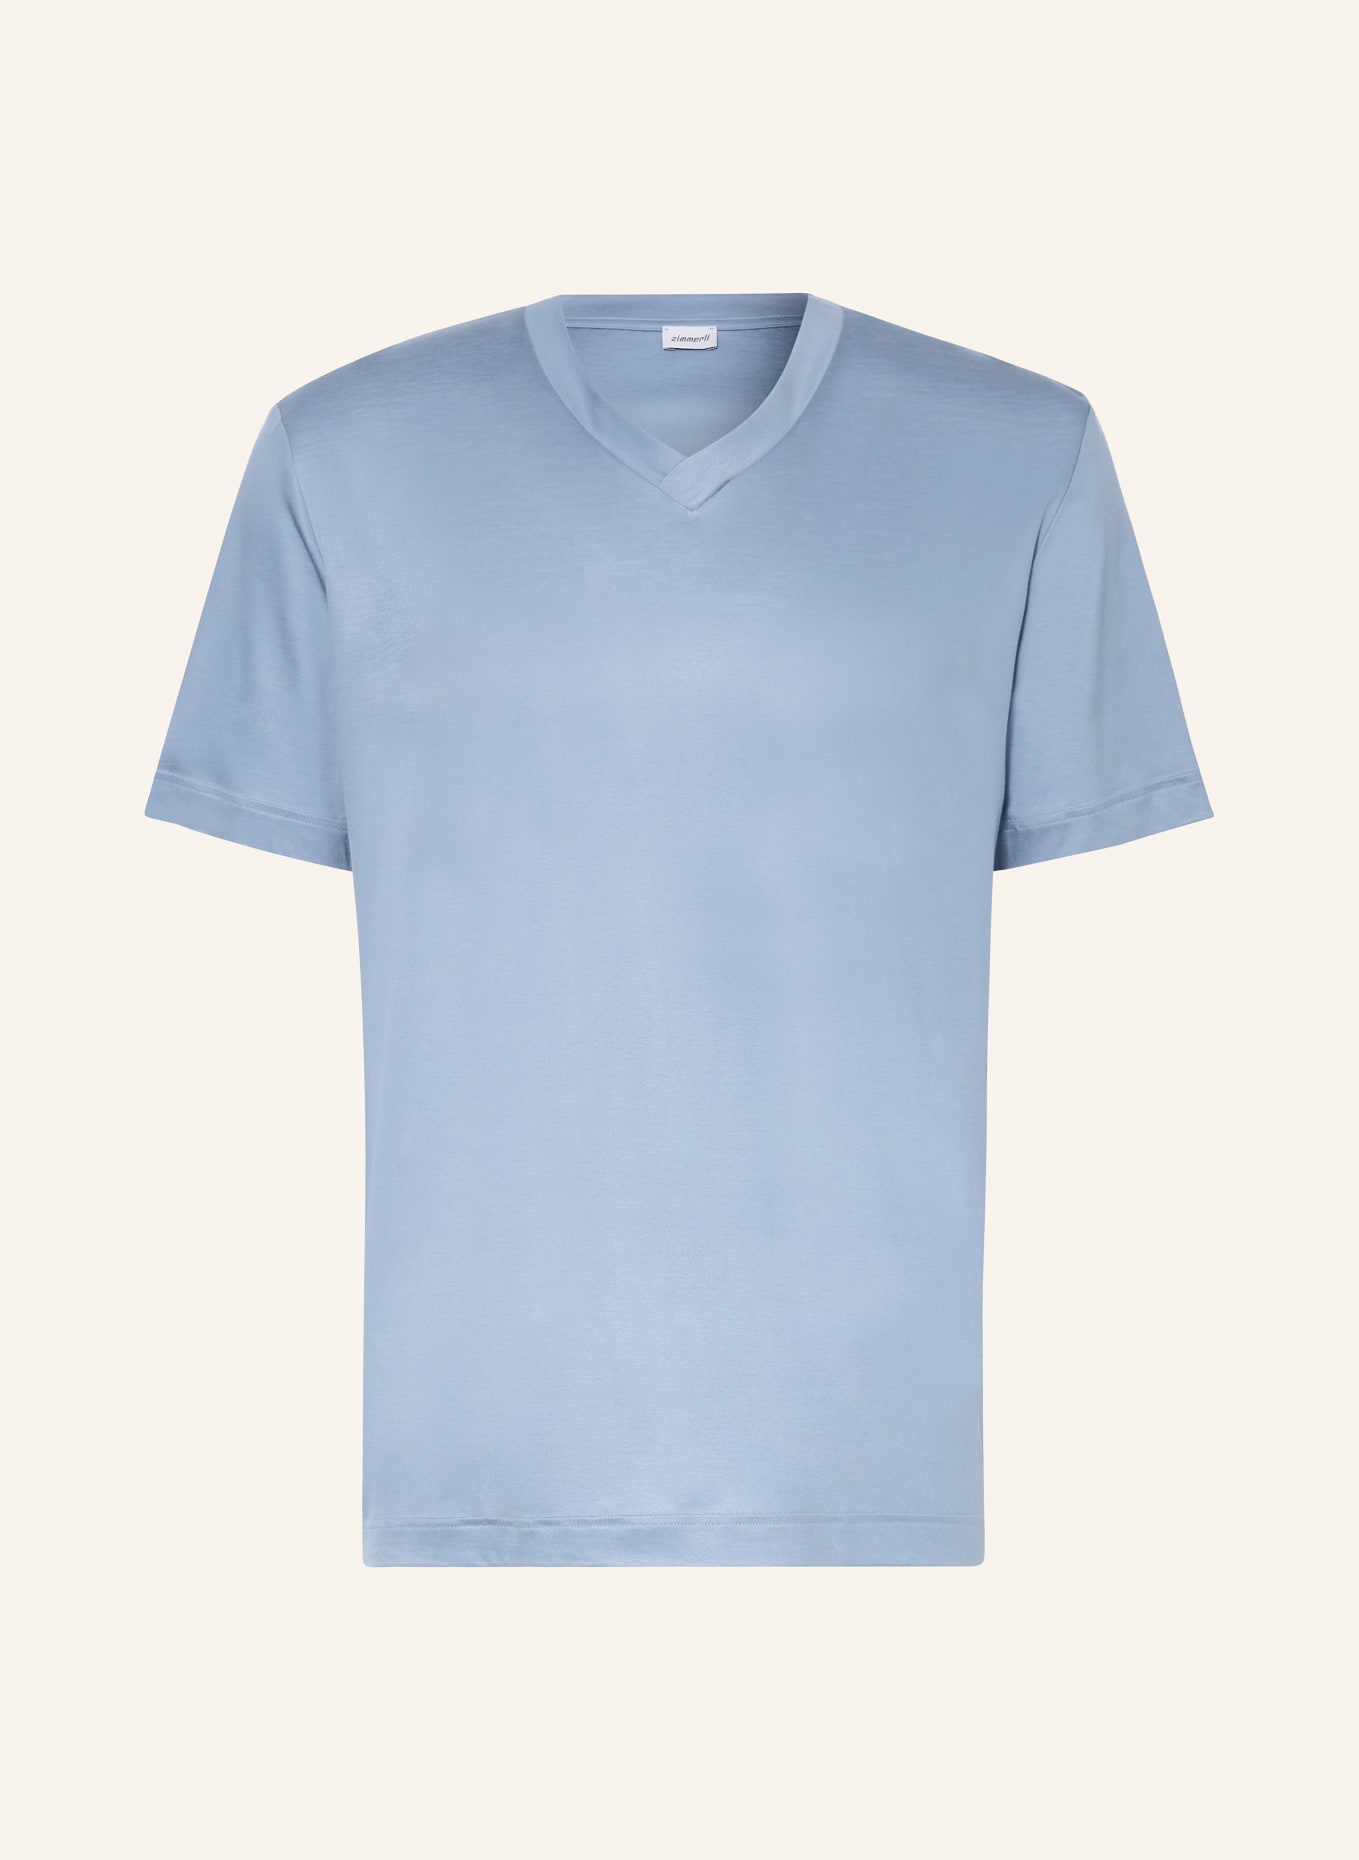 zimmerli Pajama shirt SUSTAINABLE LUXURY, Color: BLUE GRAY (Image 1)